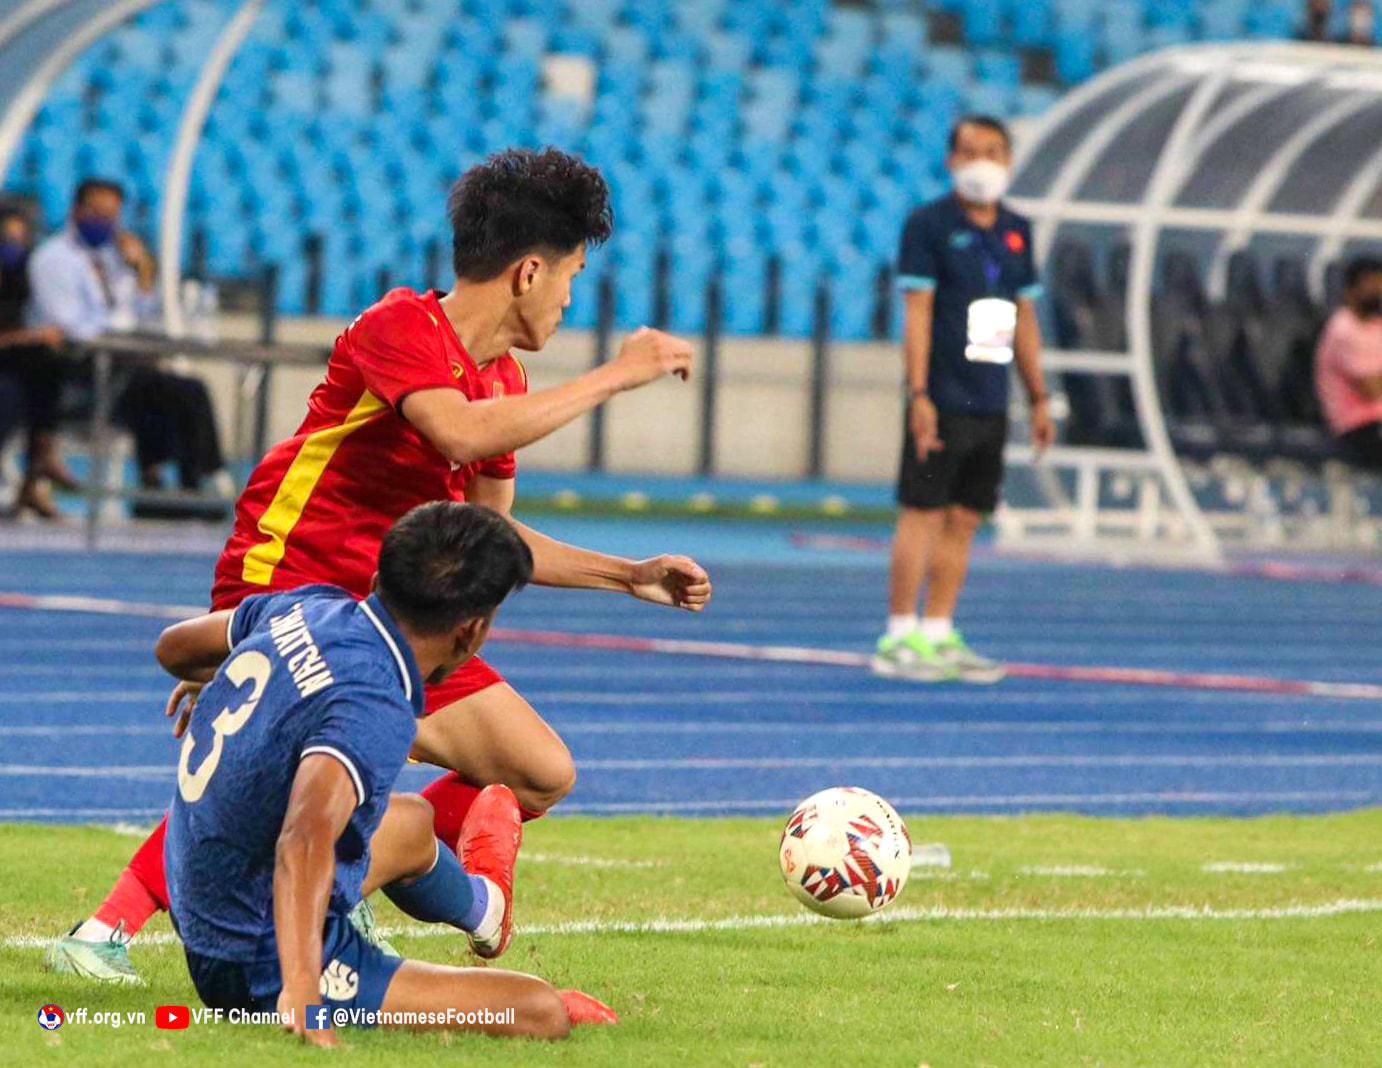 HLV U23 Thái Lan: Tiền đạo đá chung kết của tôi mới 16 tuổi - Ảnh 1